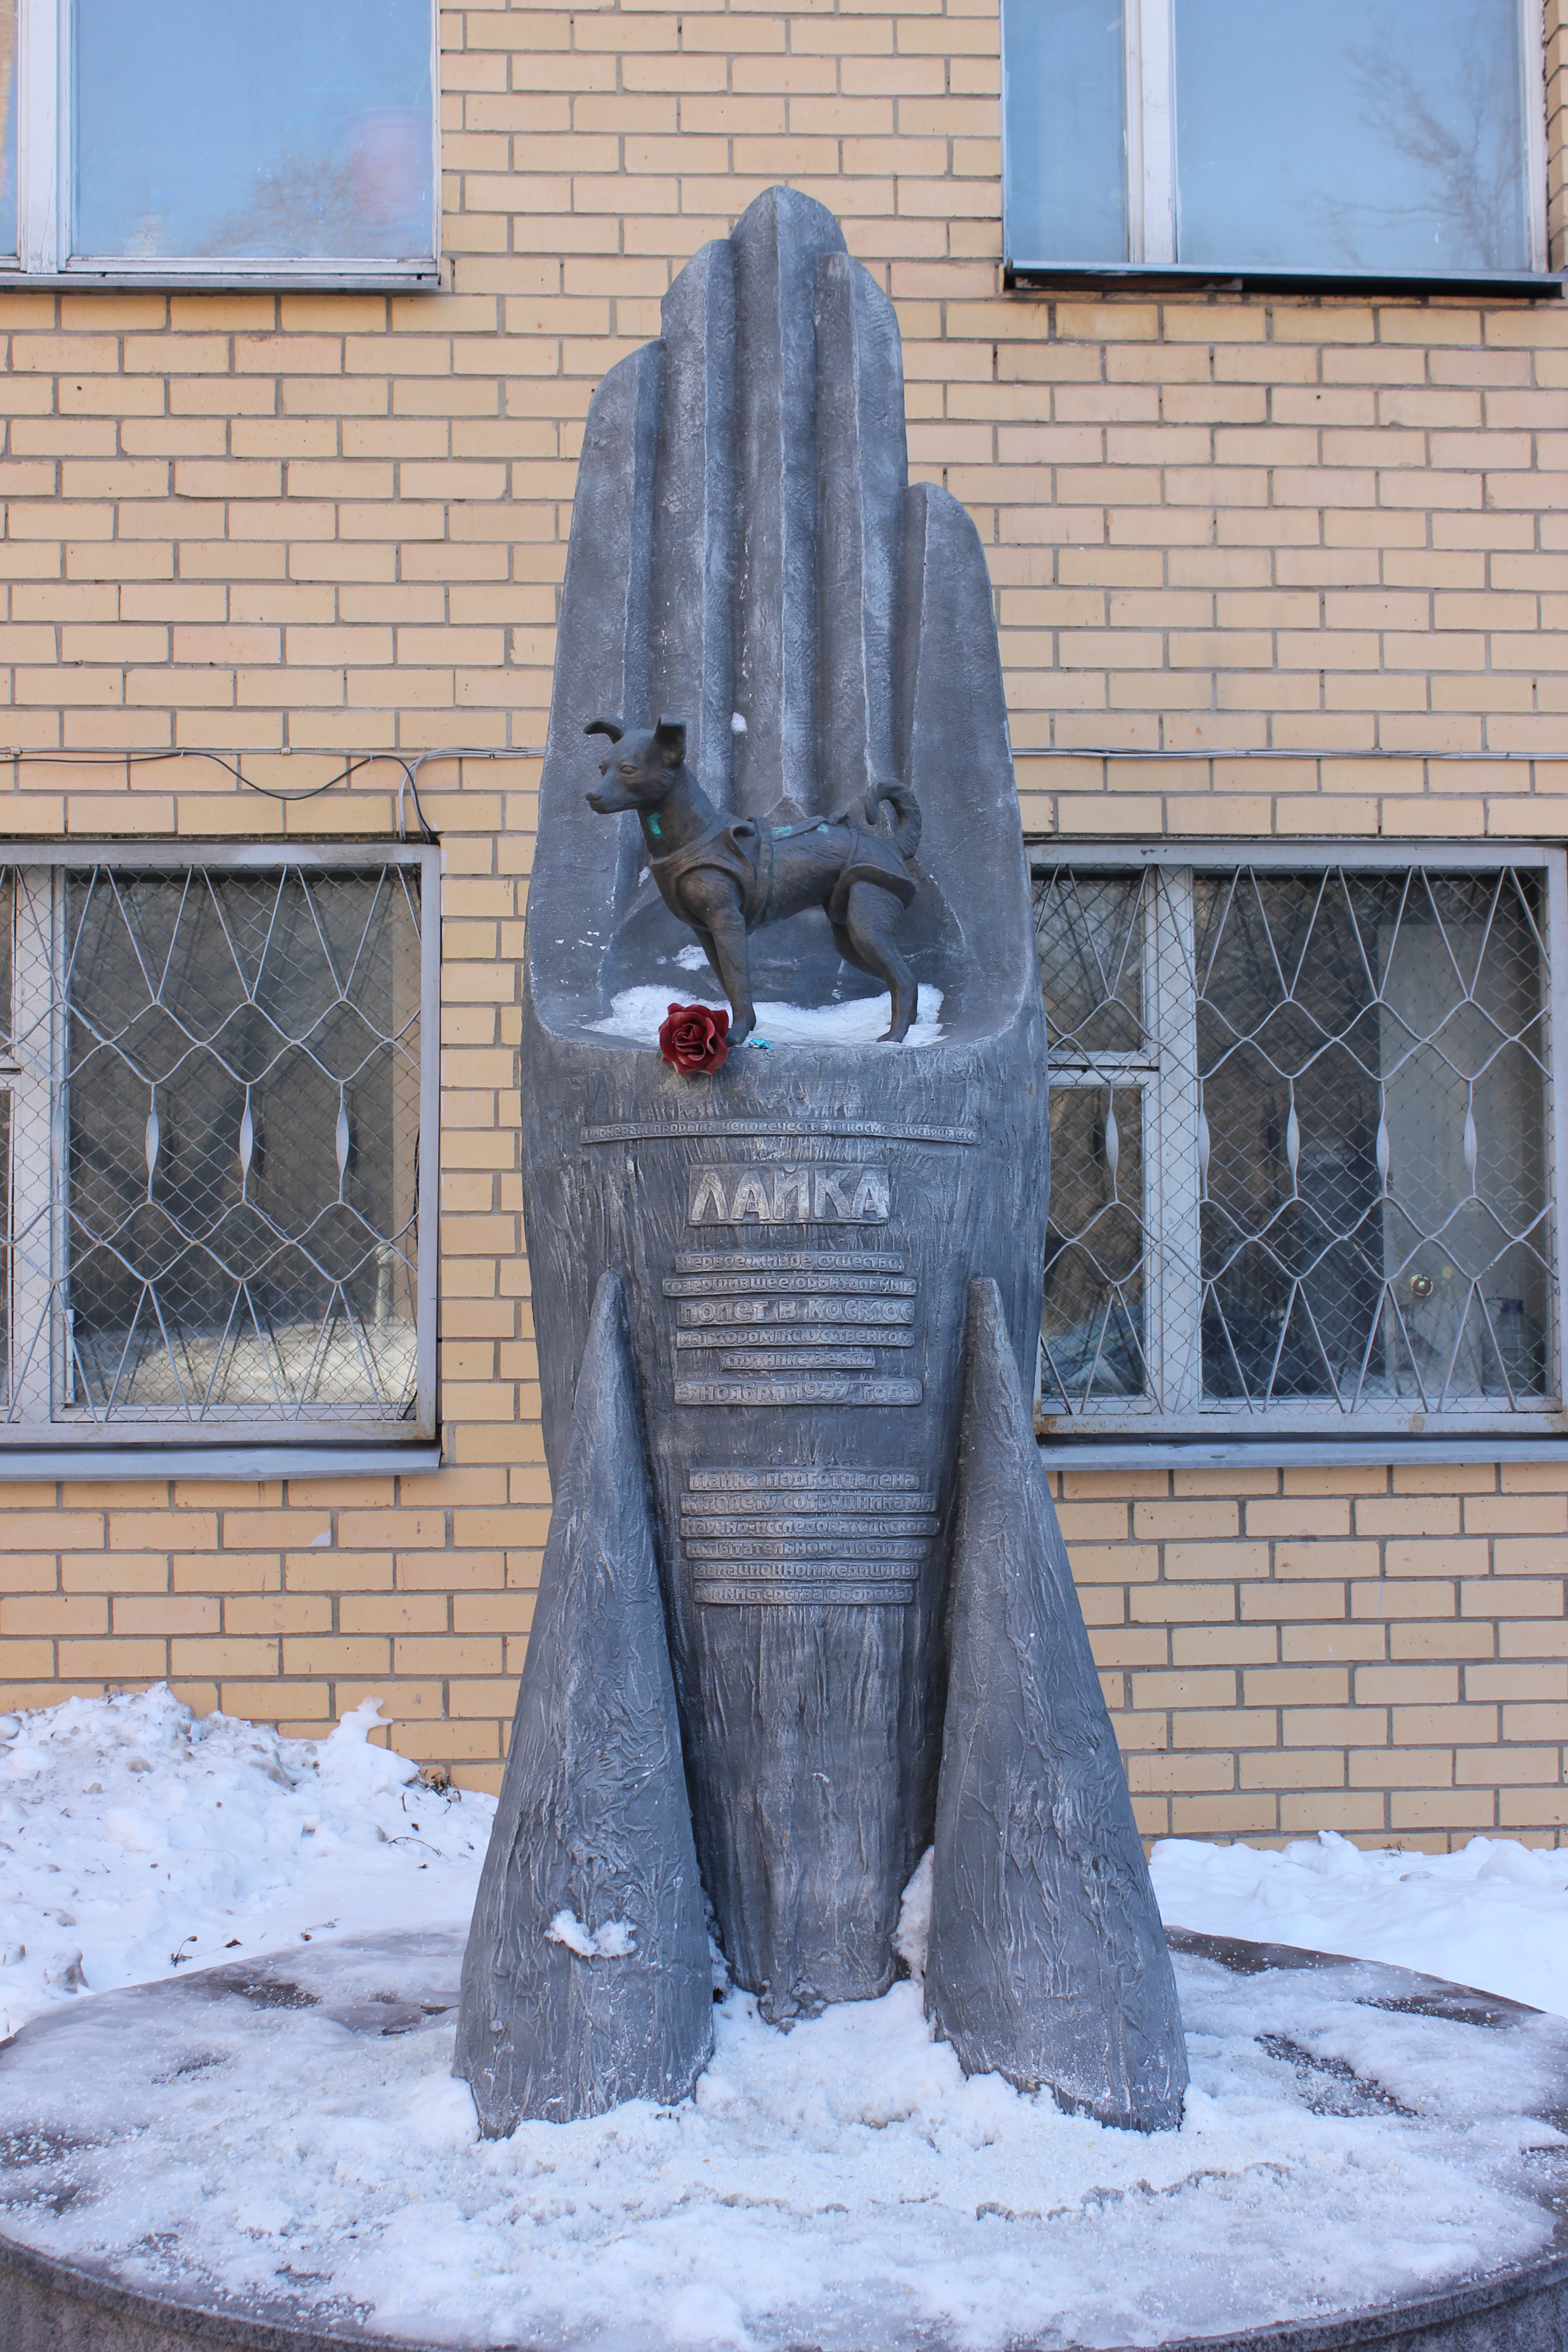 Auf dem Bild ist ein Laika-Denkmal zu sehen